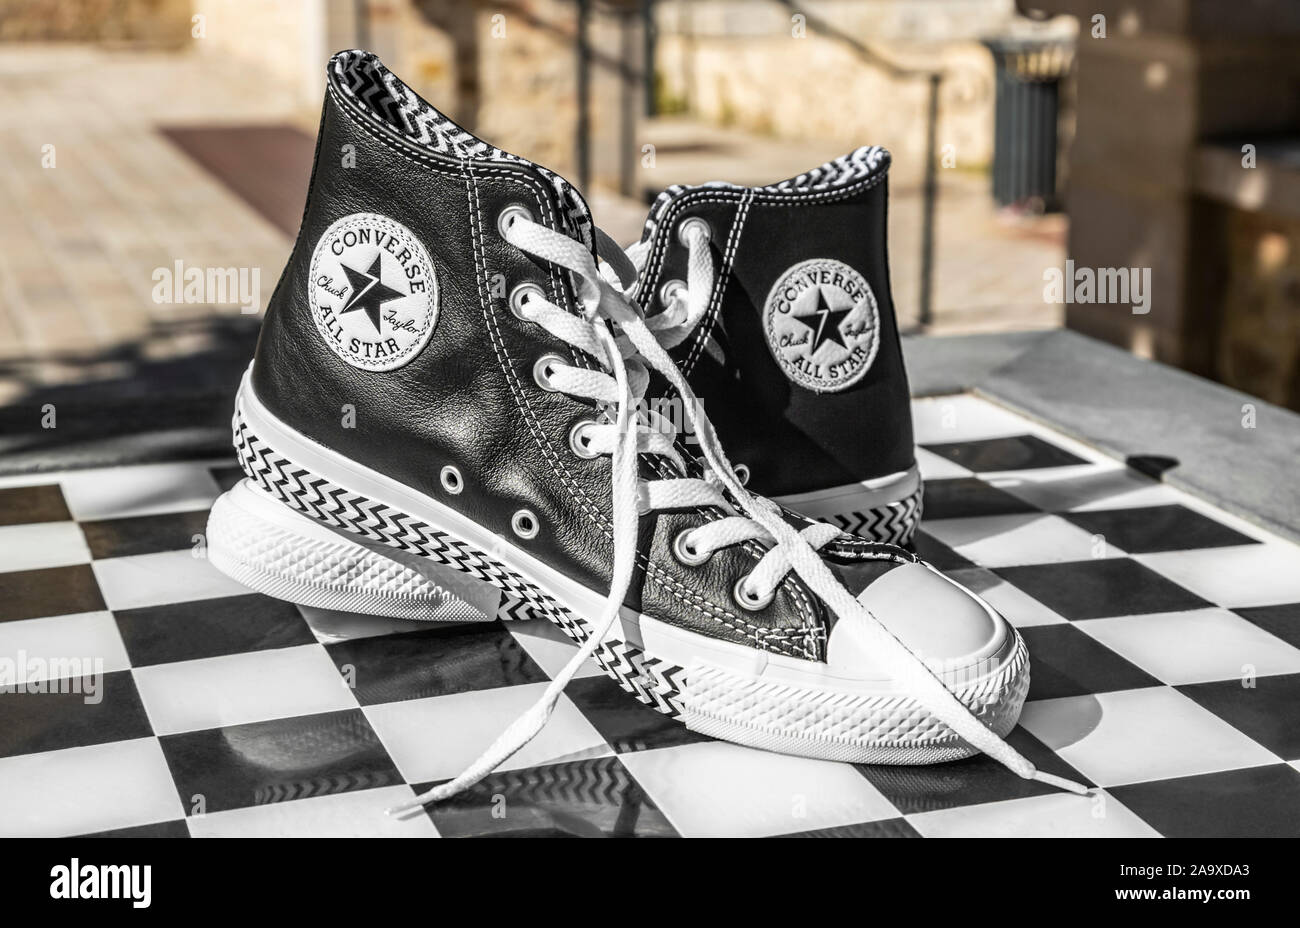 Chartres, Francia - Spetember 2, 2019: la imagen de un par de zapatillas  Converse All Star urbanas en una tabla de ajedrez en blanco y negro  Fotografía de stock - Alamy